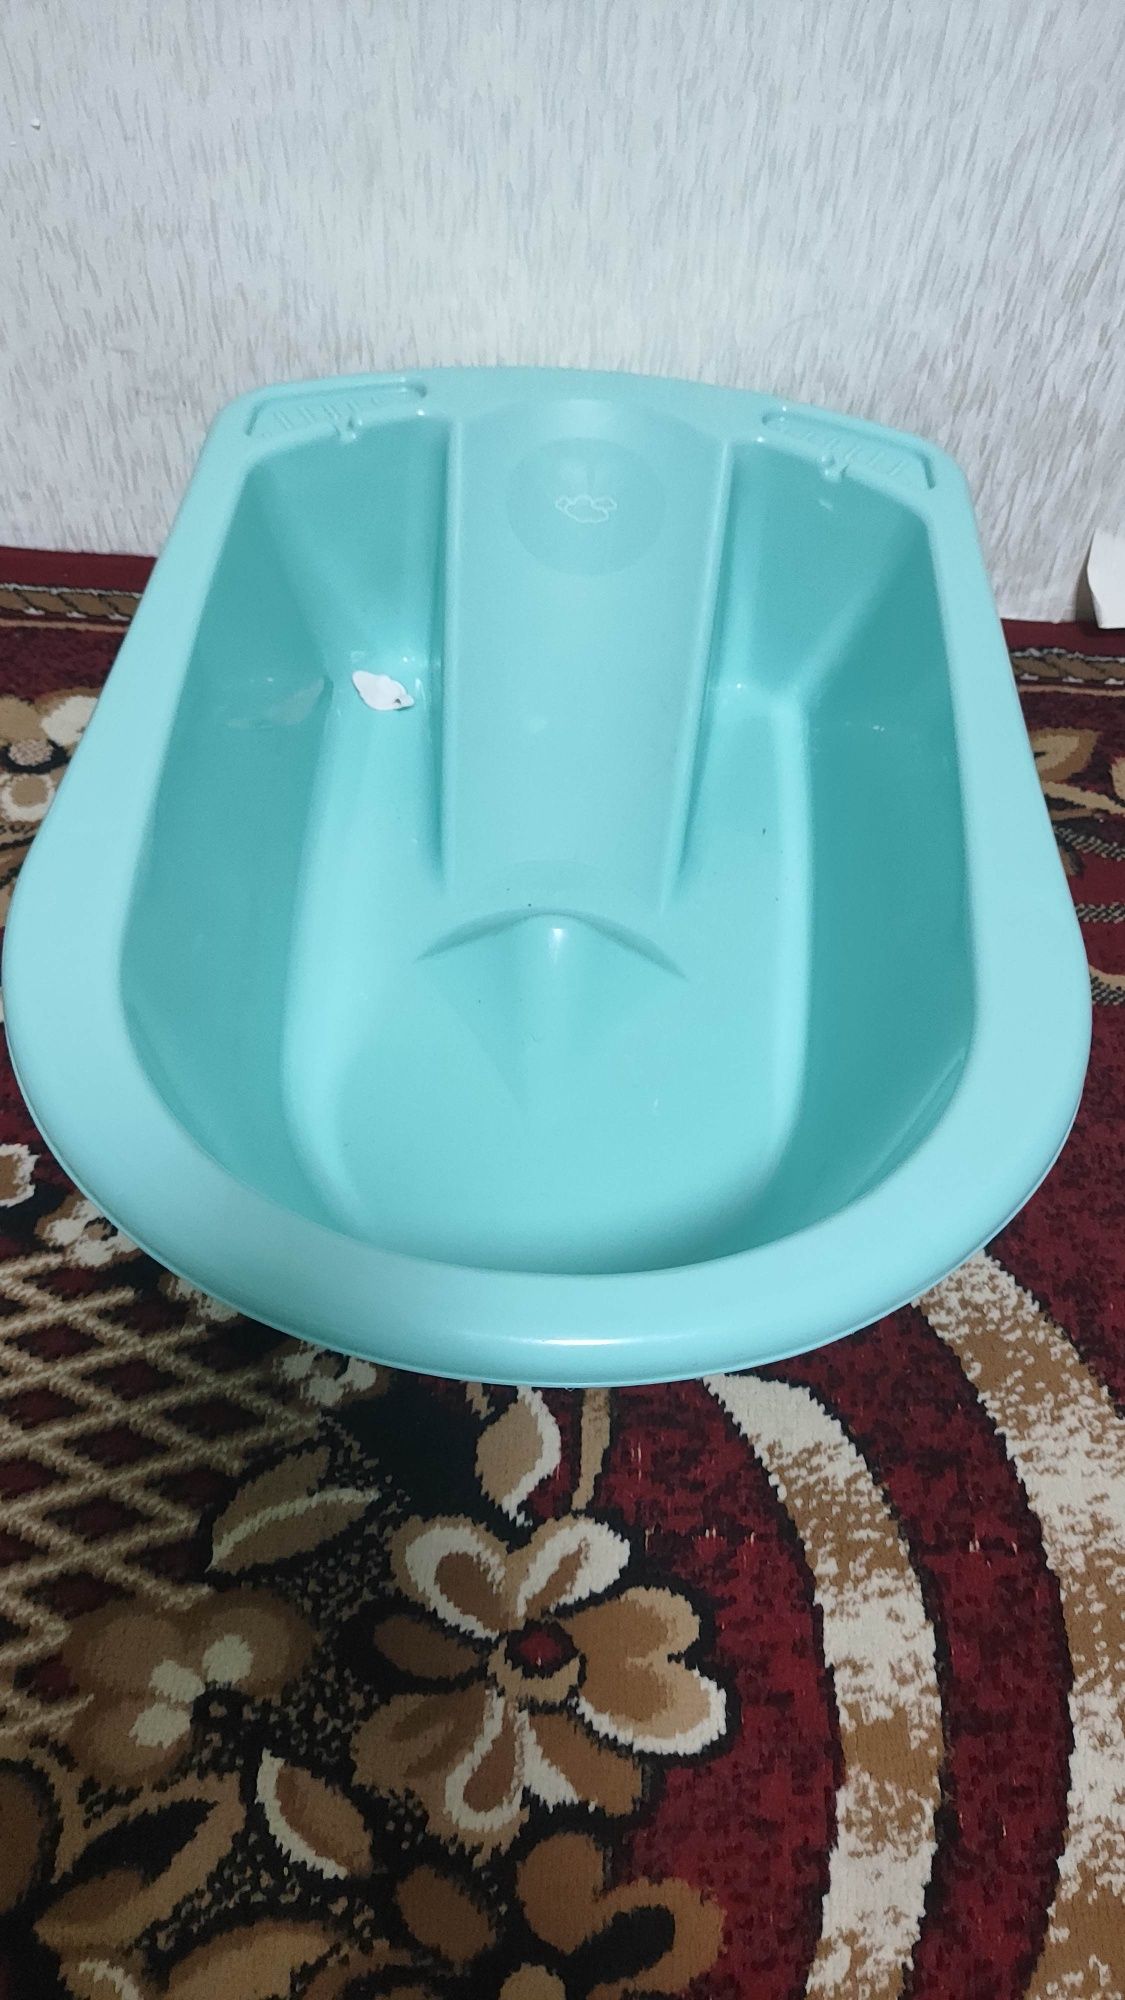 Дитяча ваночка для купання